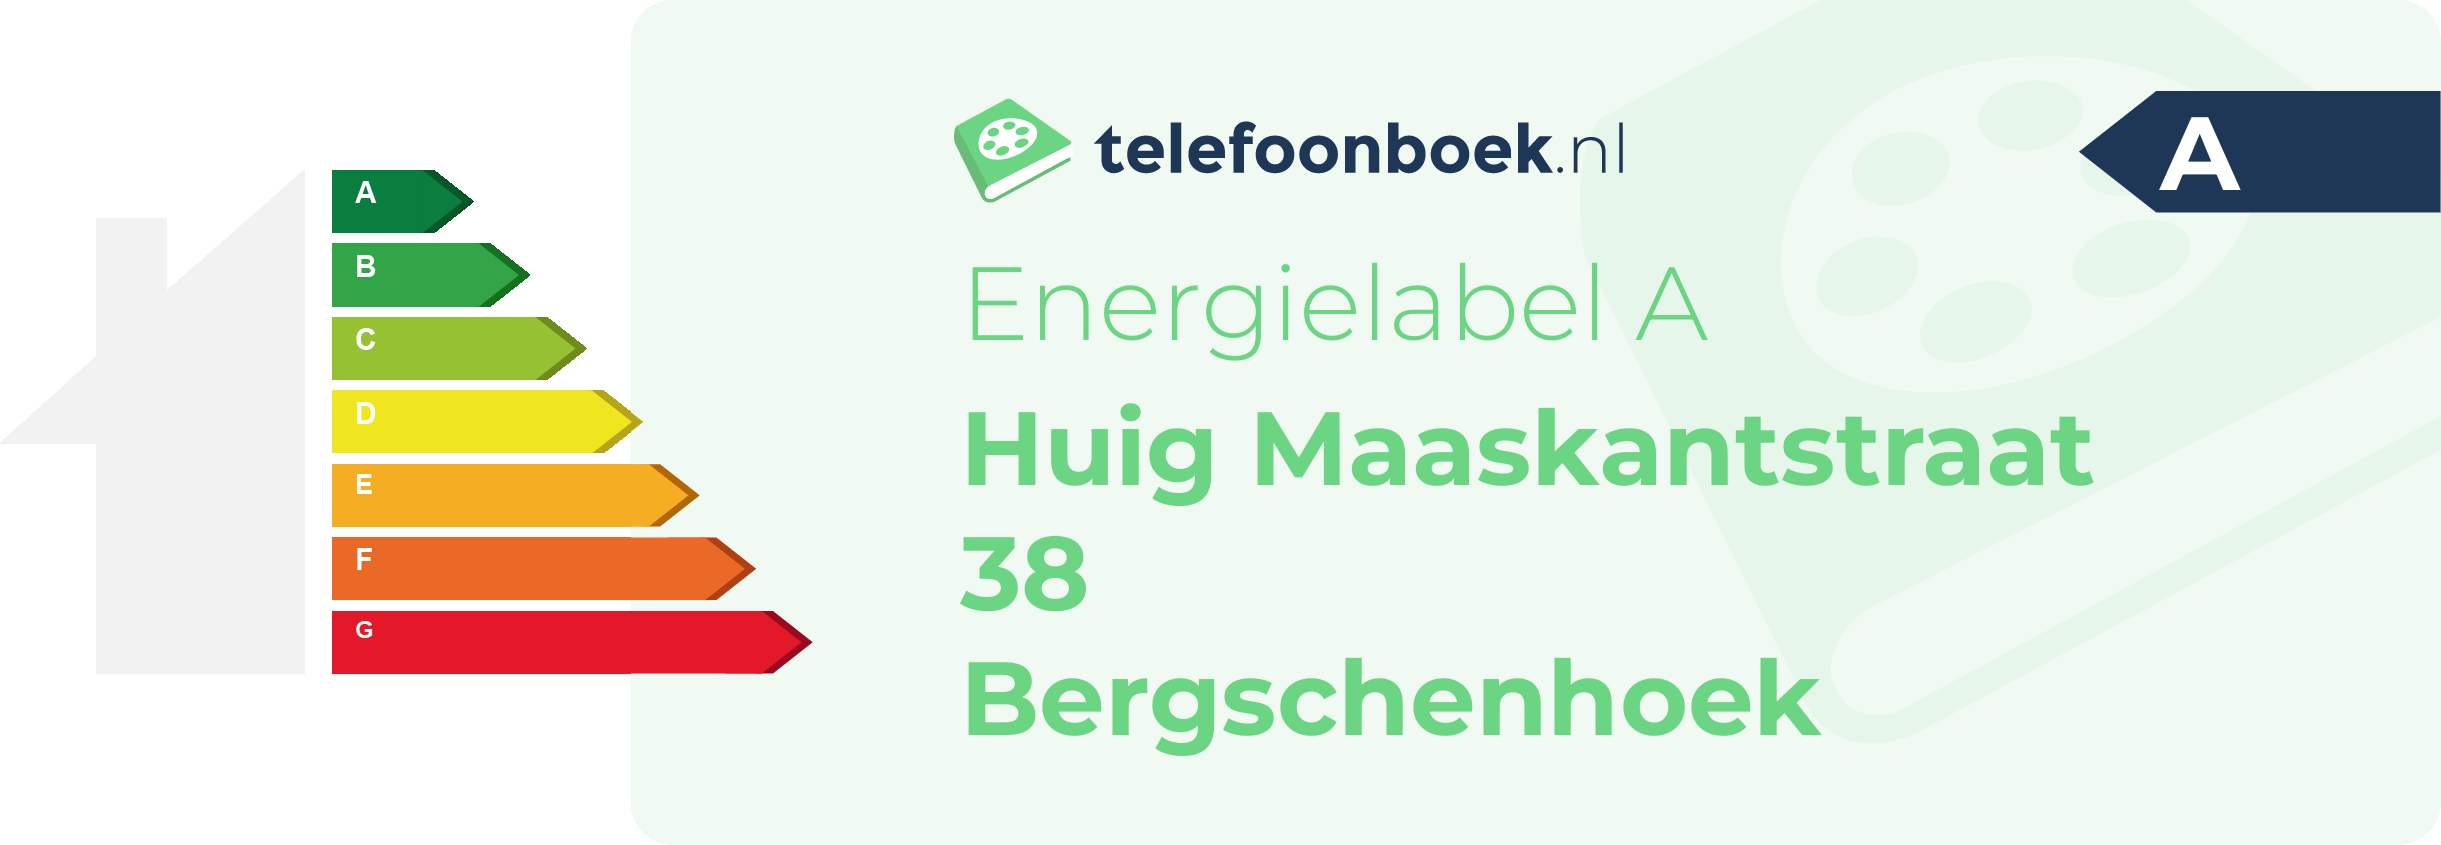 Energielabel Huig Maaskantstraat 38 Bergschenhoek